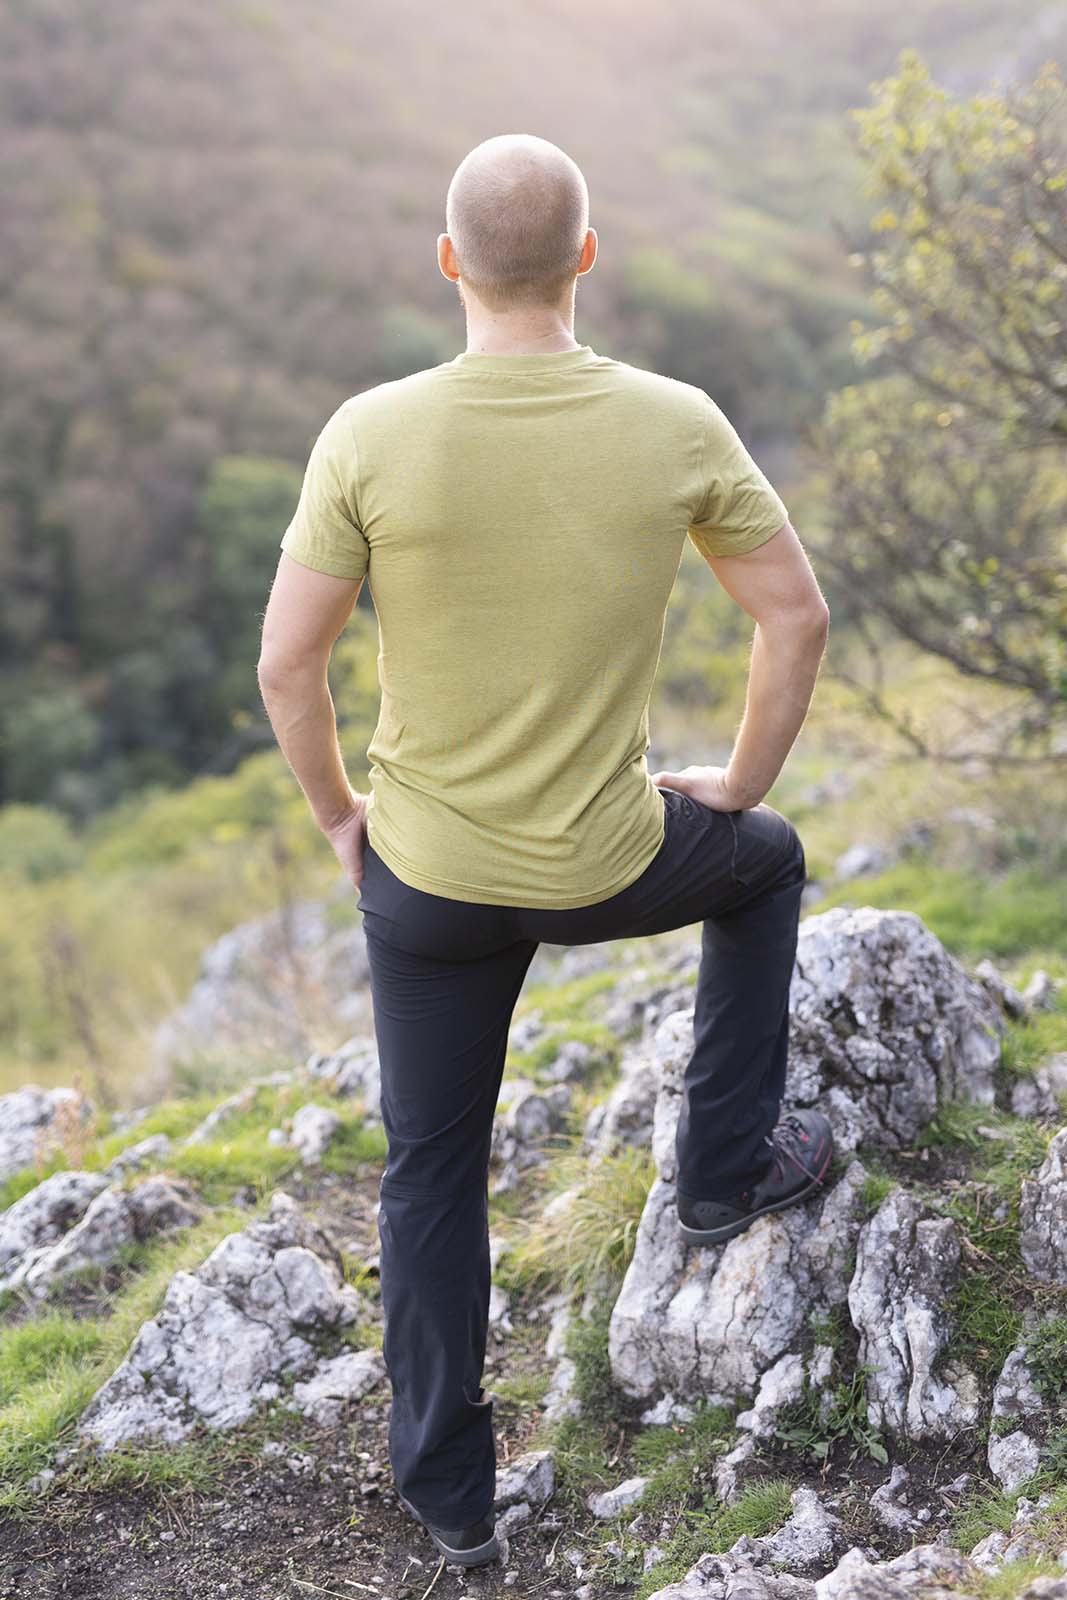 Muž počas západu slnka vystupuje na kopec. Je otočený chrbtom, má oblečené zelené tričko značky kallys, ktoré sa nazýva Supreme Silk a je z merina a tencelu